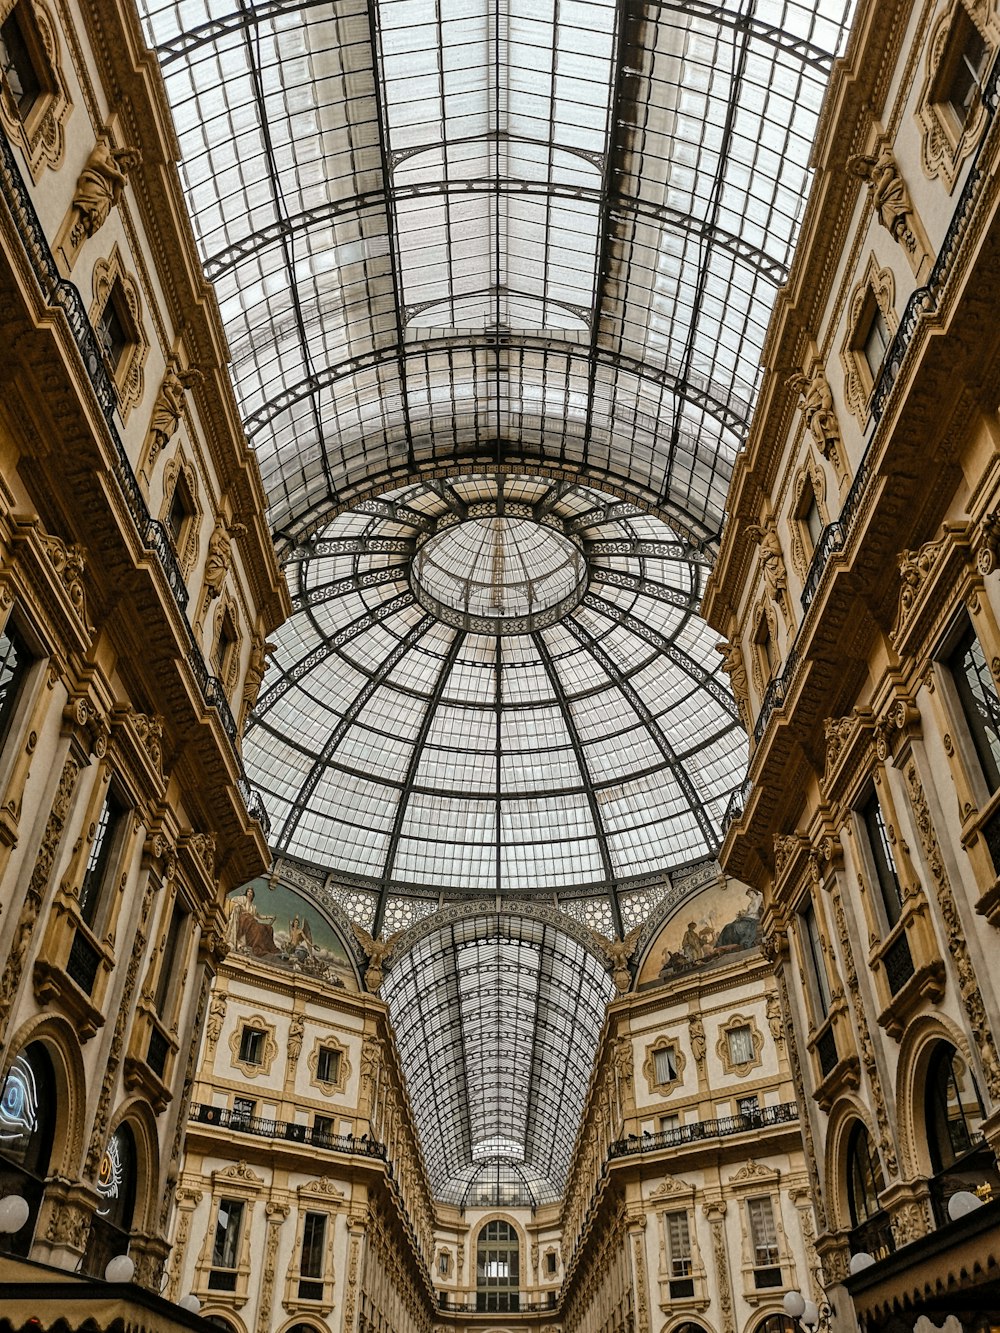 Tiefansicht des Einkaufszentrums Galleria Vittorio Emanuele II